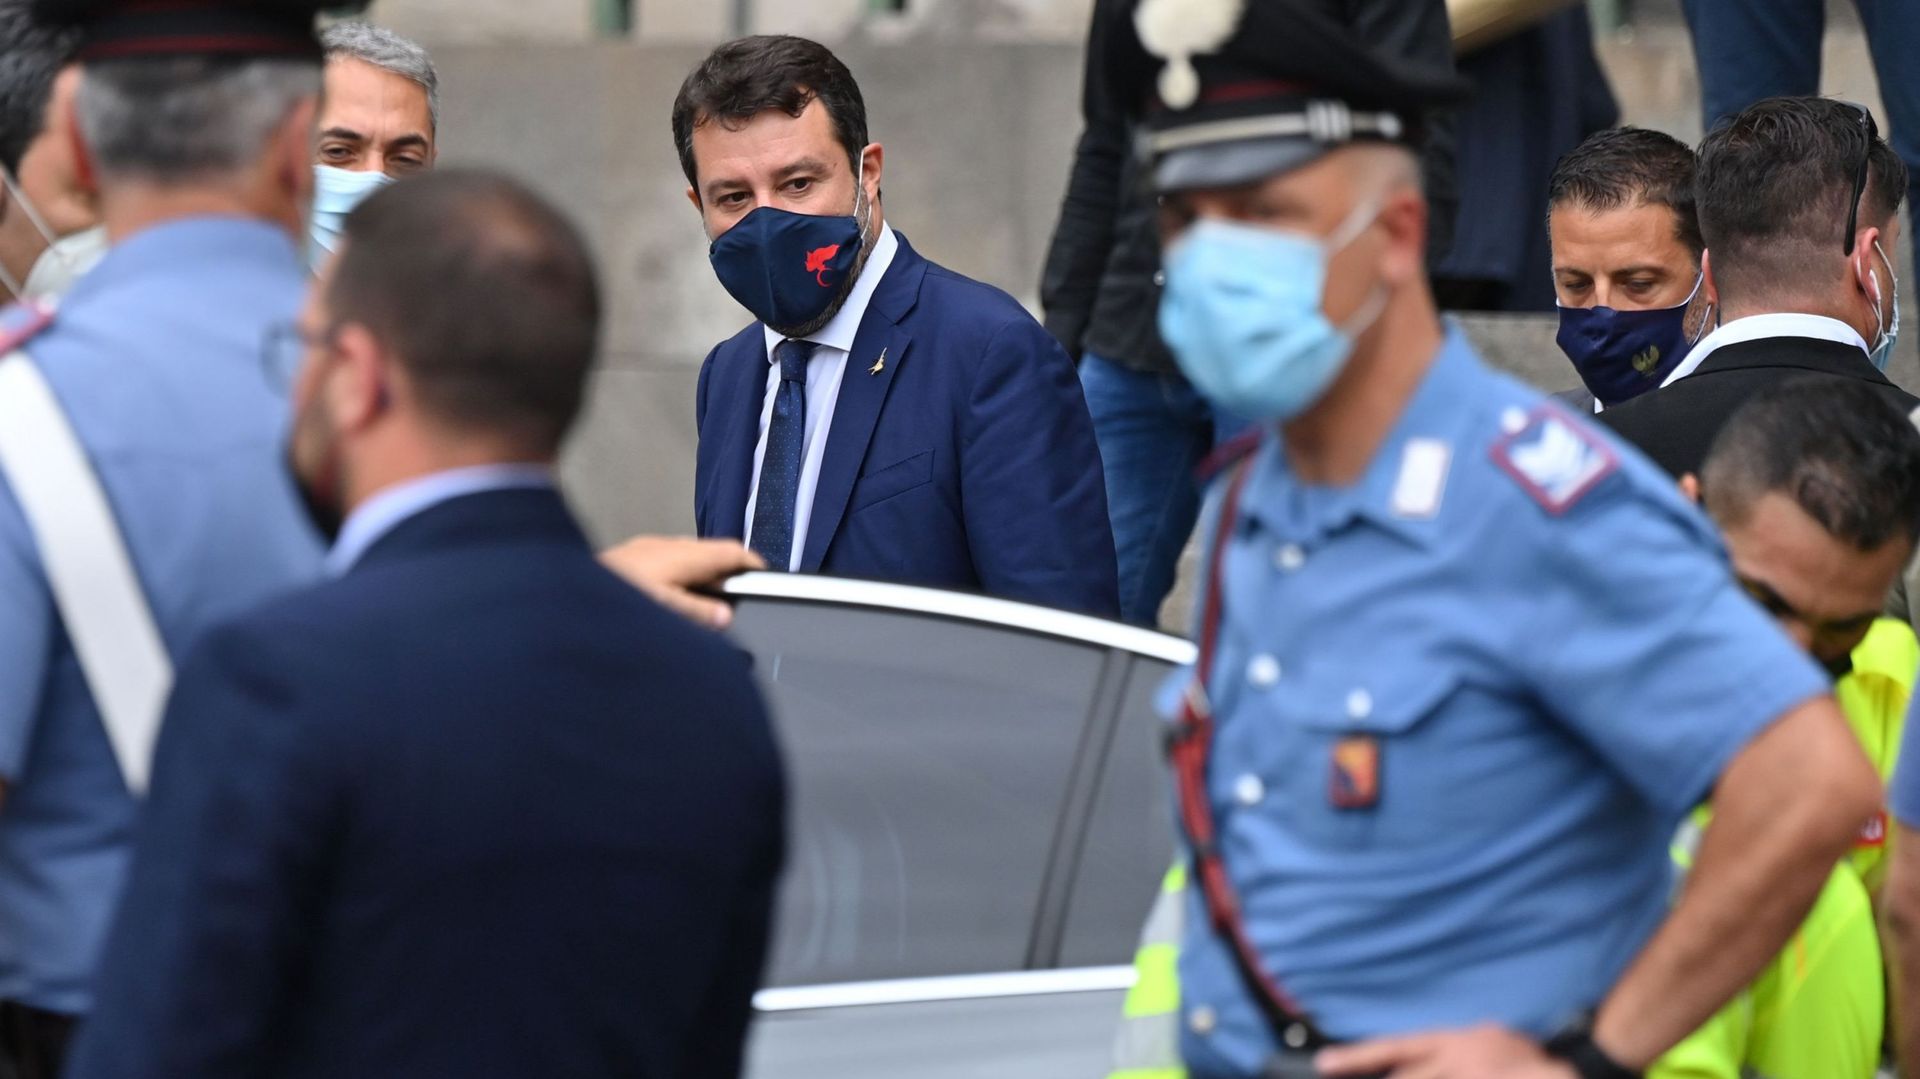 Matteo Salvini doit-il être jugé ? Le tribunal de Catane reporte son audience au 20 novembre